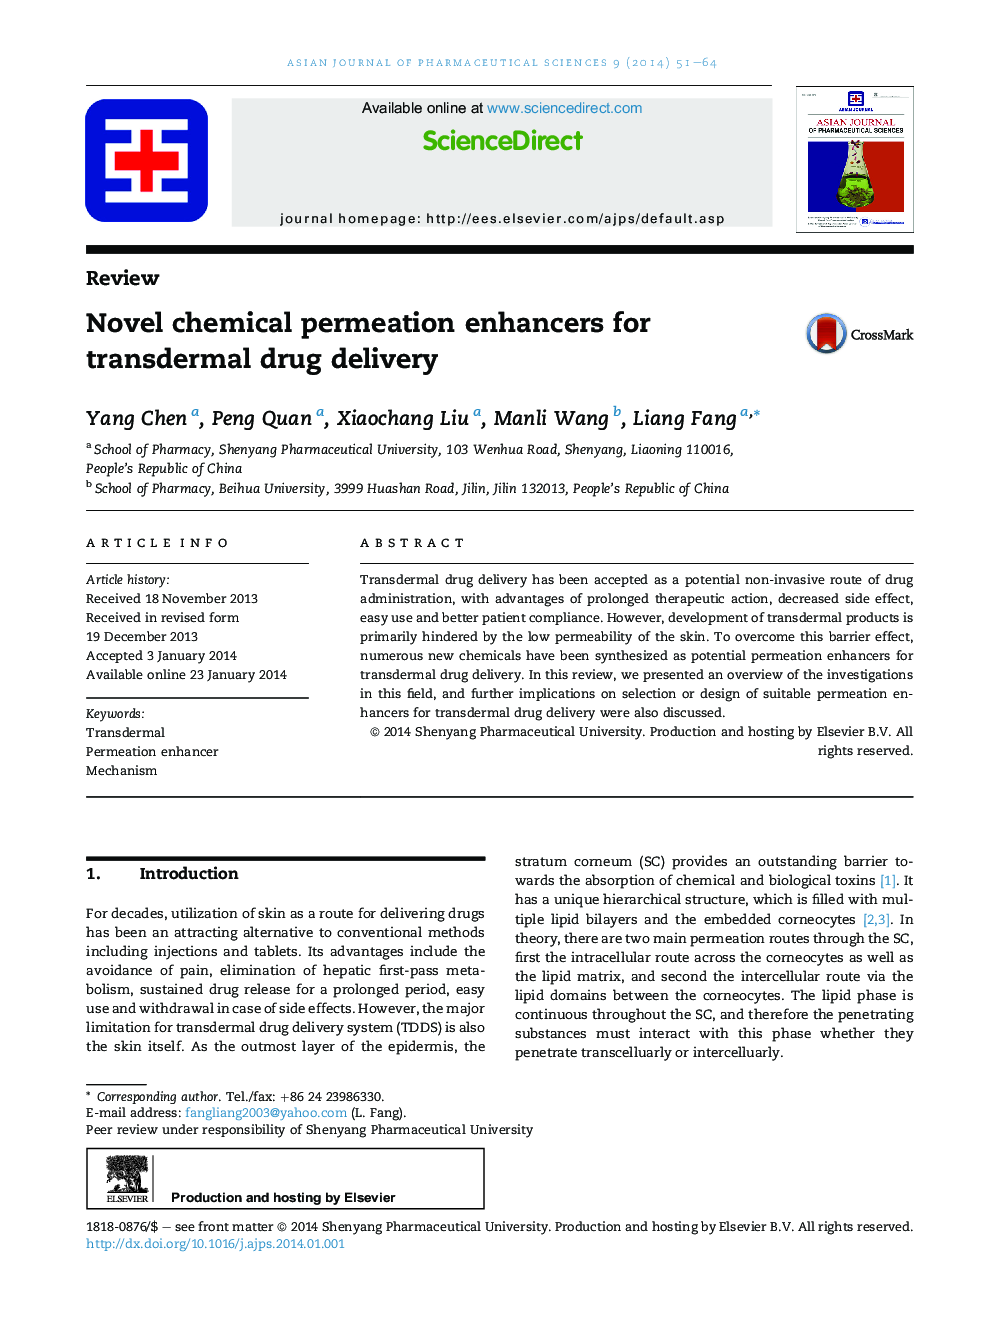 Novel chemical permeation enhancers for transdermal drug delivery 